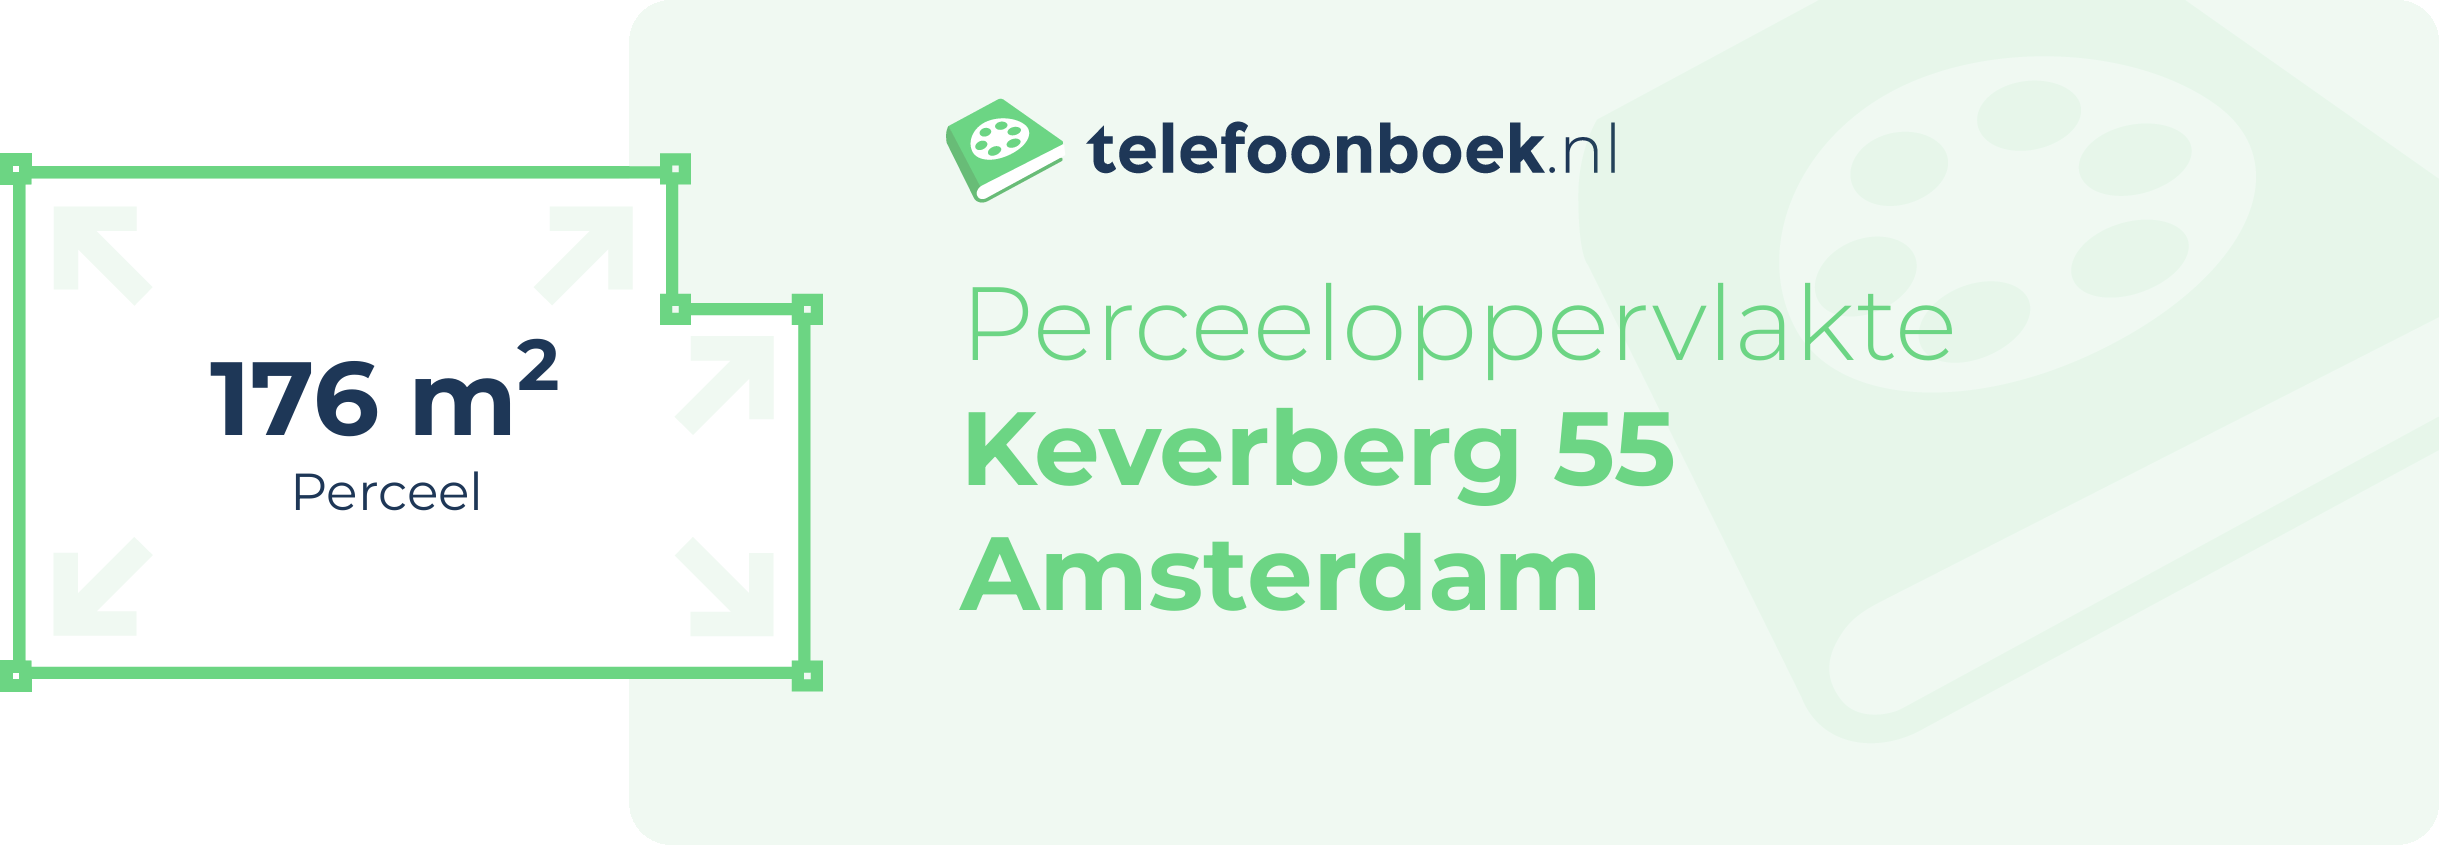 Perceeloppervlakte Keverberg 55 Amsterdam